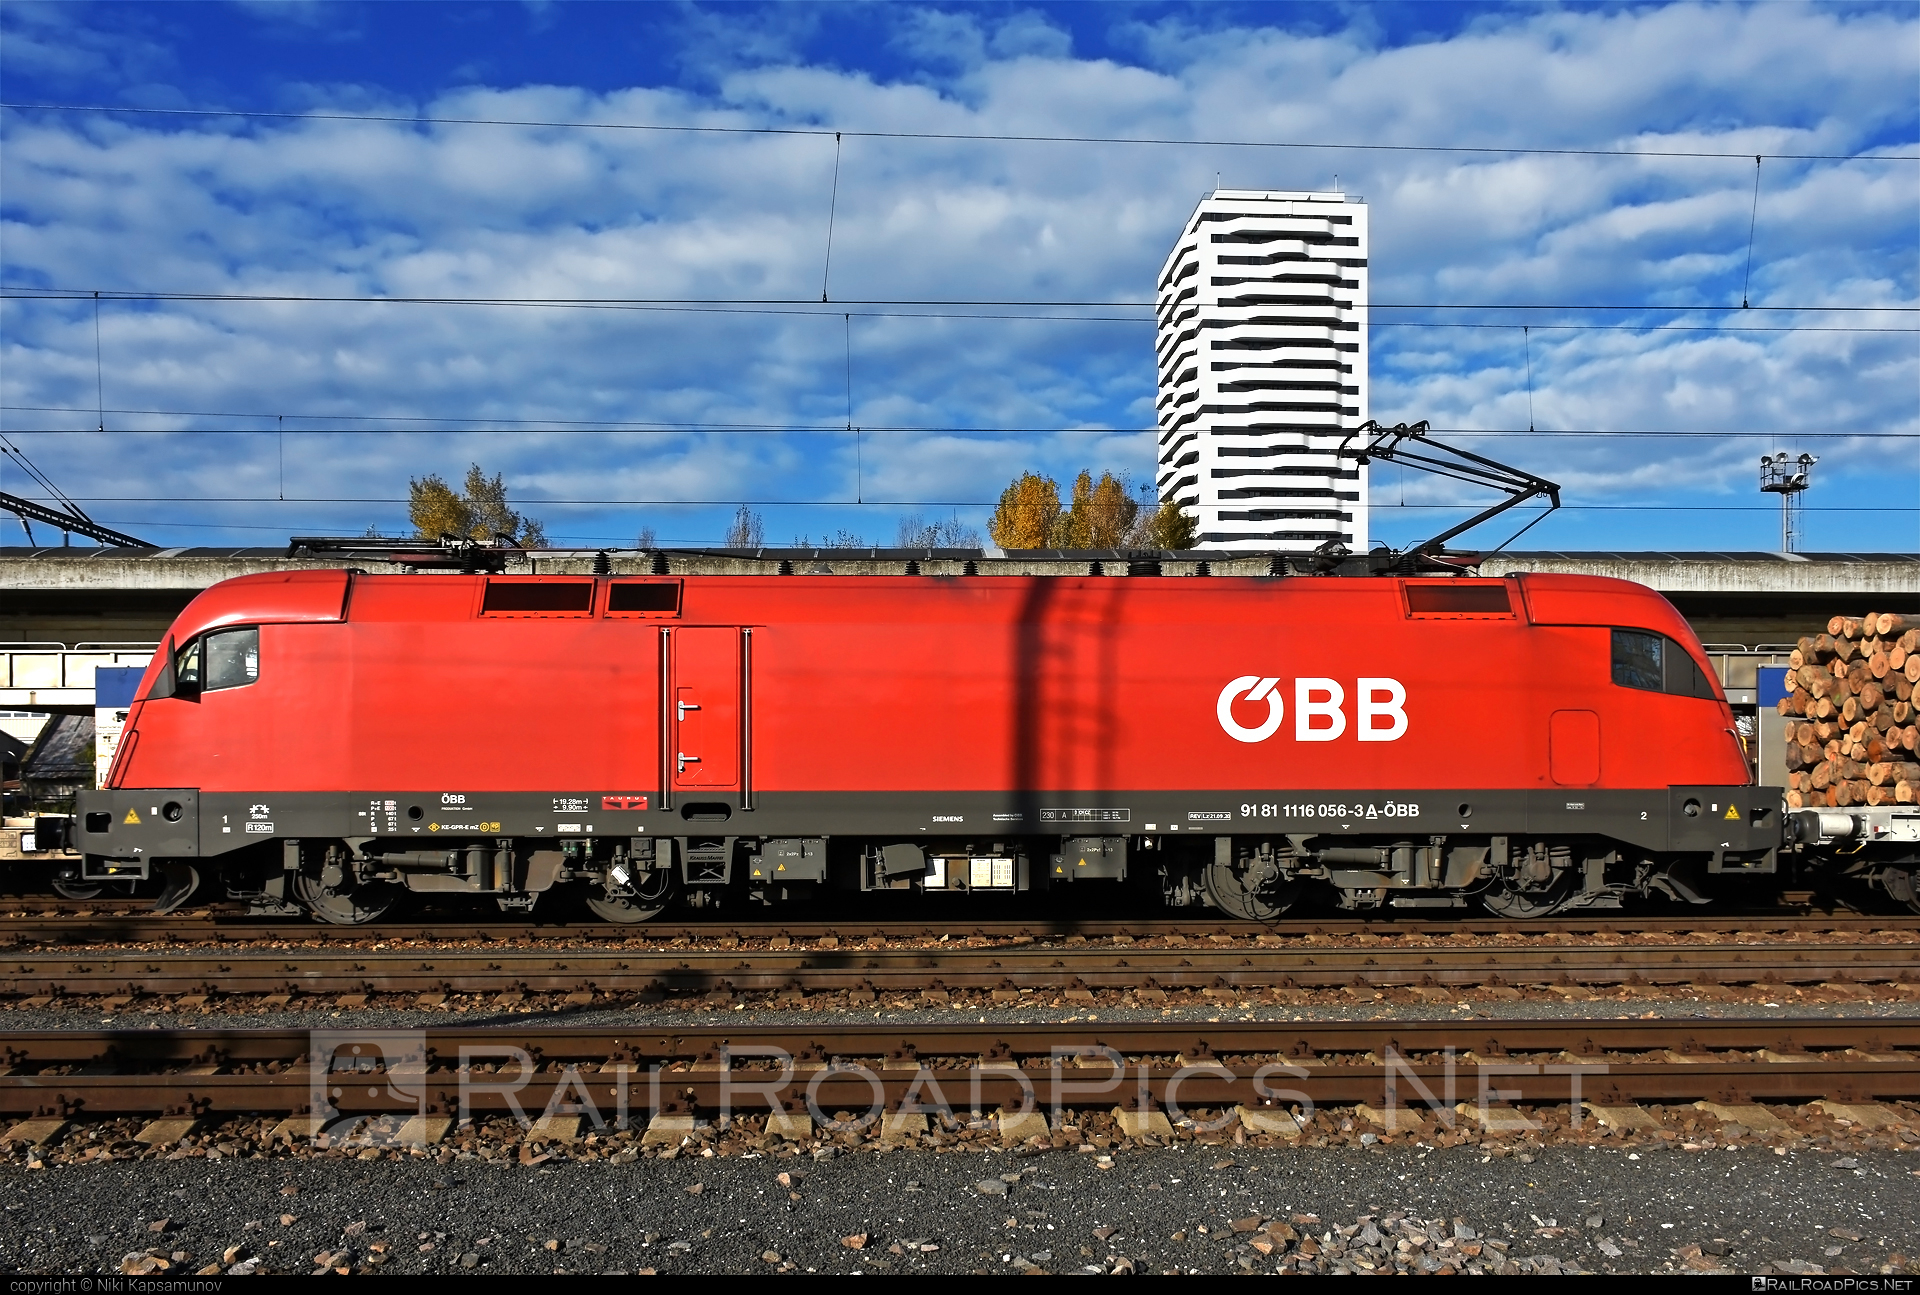 Siemens ES 64 U2 - 1116 056 operated by Rail Cargo Austria AG #es64 #es64u2 #eurosprinter #obb #osterreichischebundesbahnen #siemens #siemenses64 #siemenses64u2 #siemenstaurus #taurus #tauruslocomotive